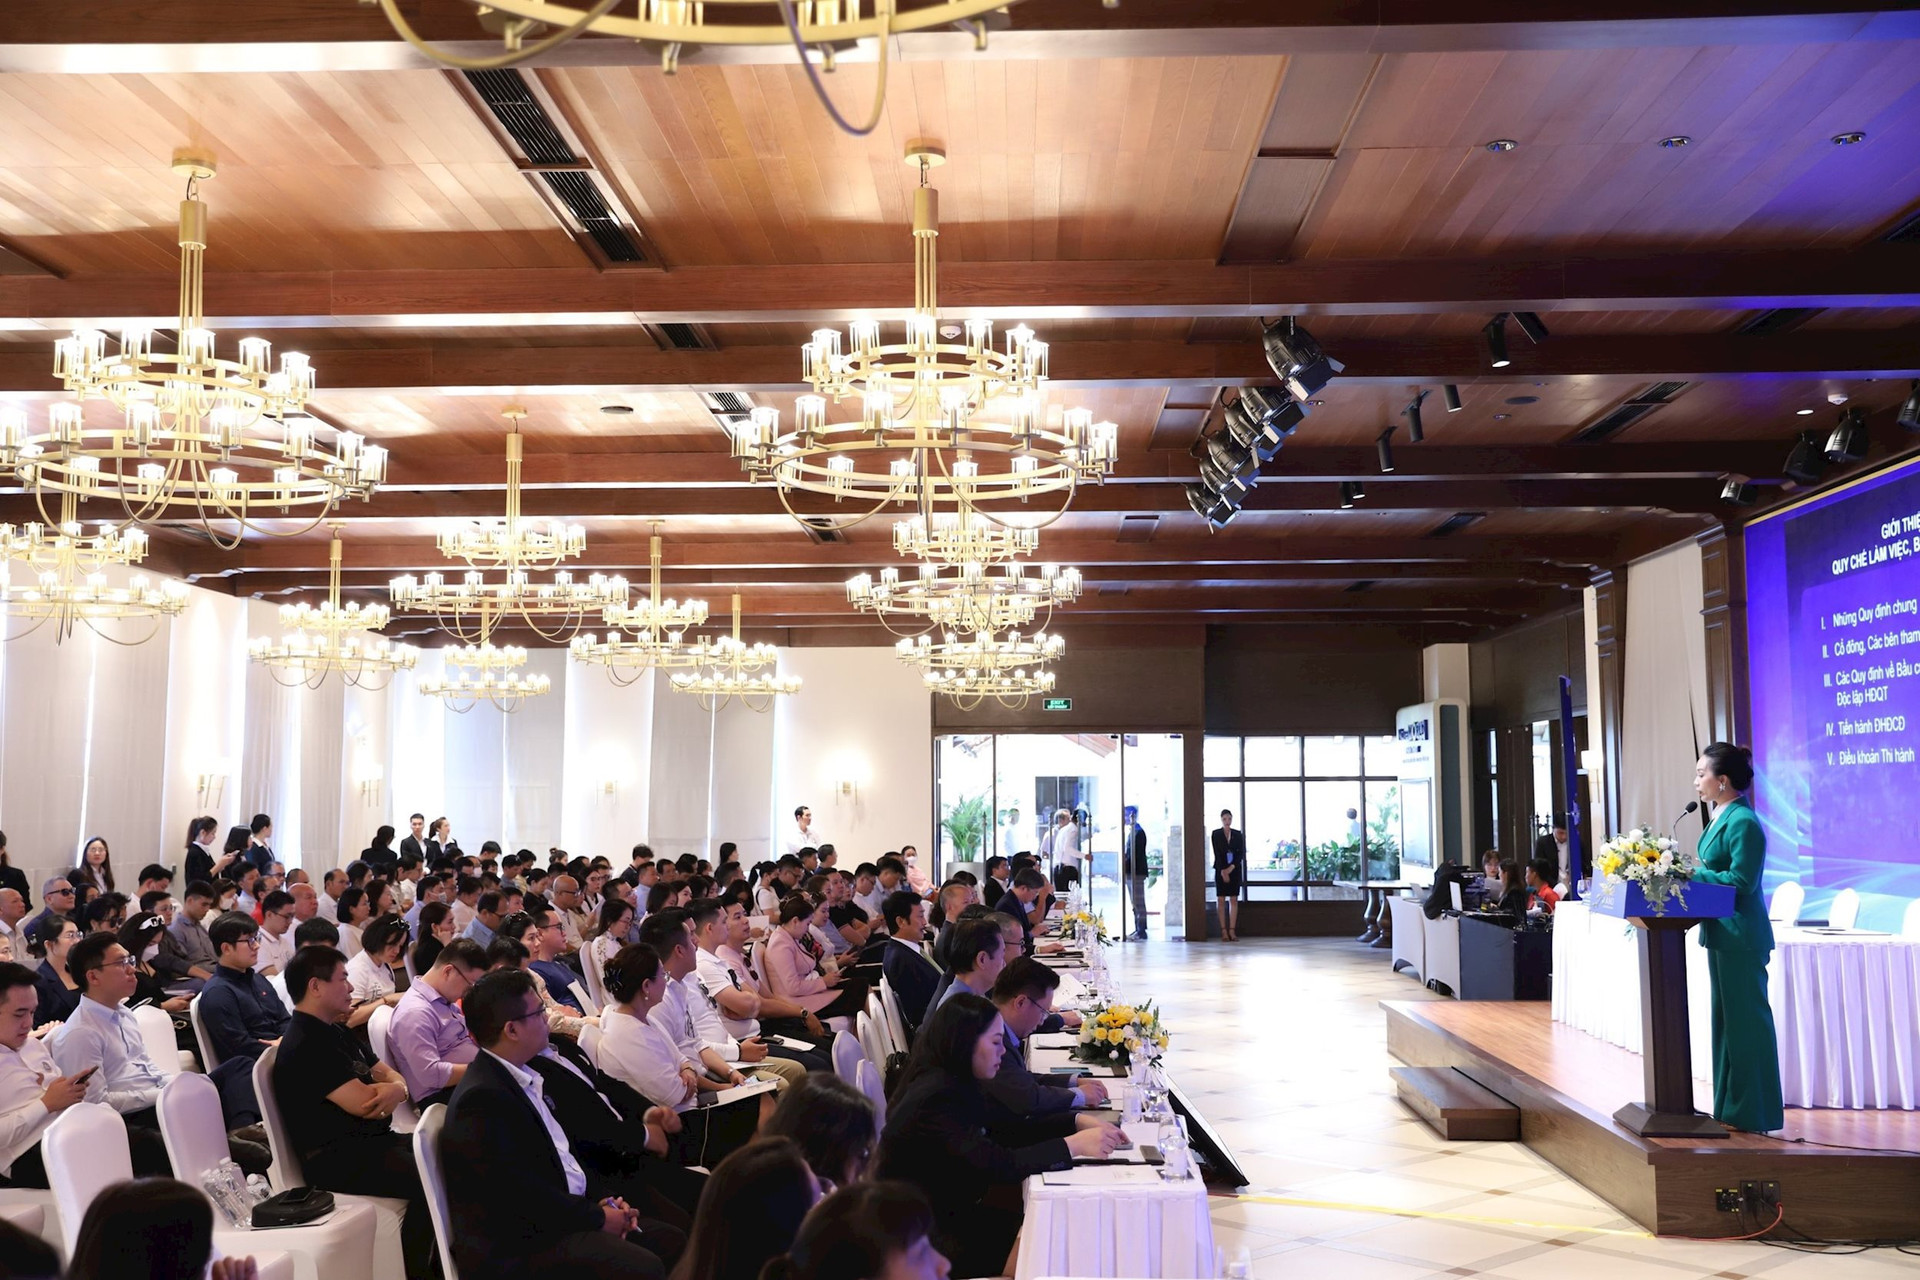 Chủ tịch Bùi Thành Nhơn: ĐHCĐ 2023 đặc biệt nhất trong 30 năm của Novaland, chúng tôi cam kết nỗ lực hành động bù đắp cho khách hàng, cổ đông - Ảnh 1.